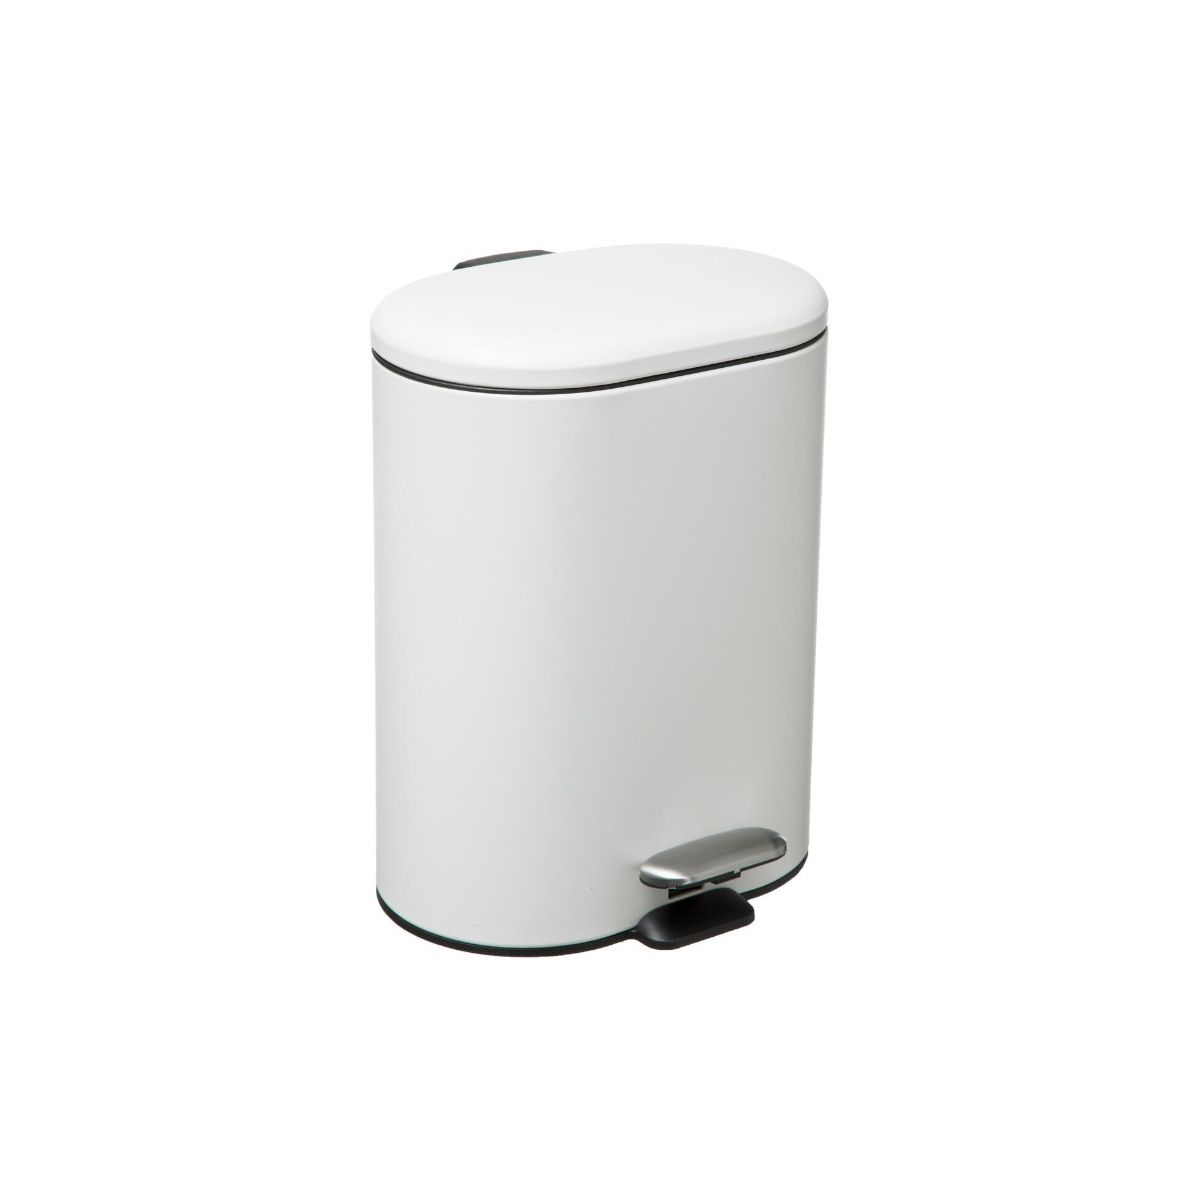 Poubelle de salle de bain design rétro Gara - 6 L - Blanc